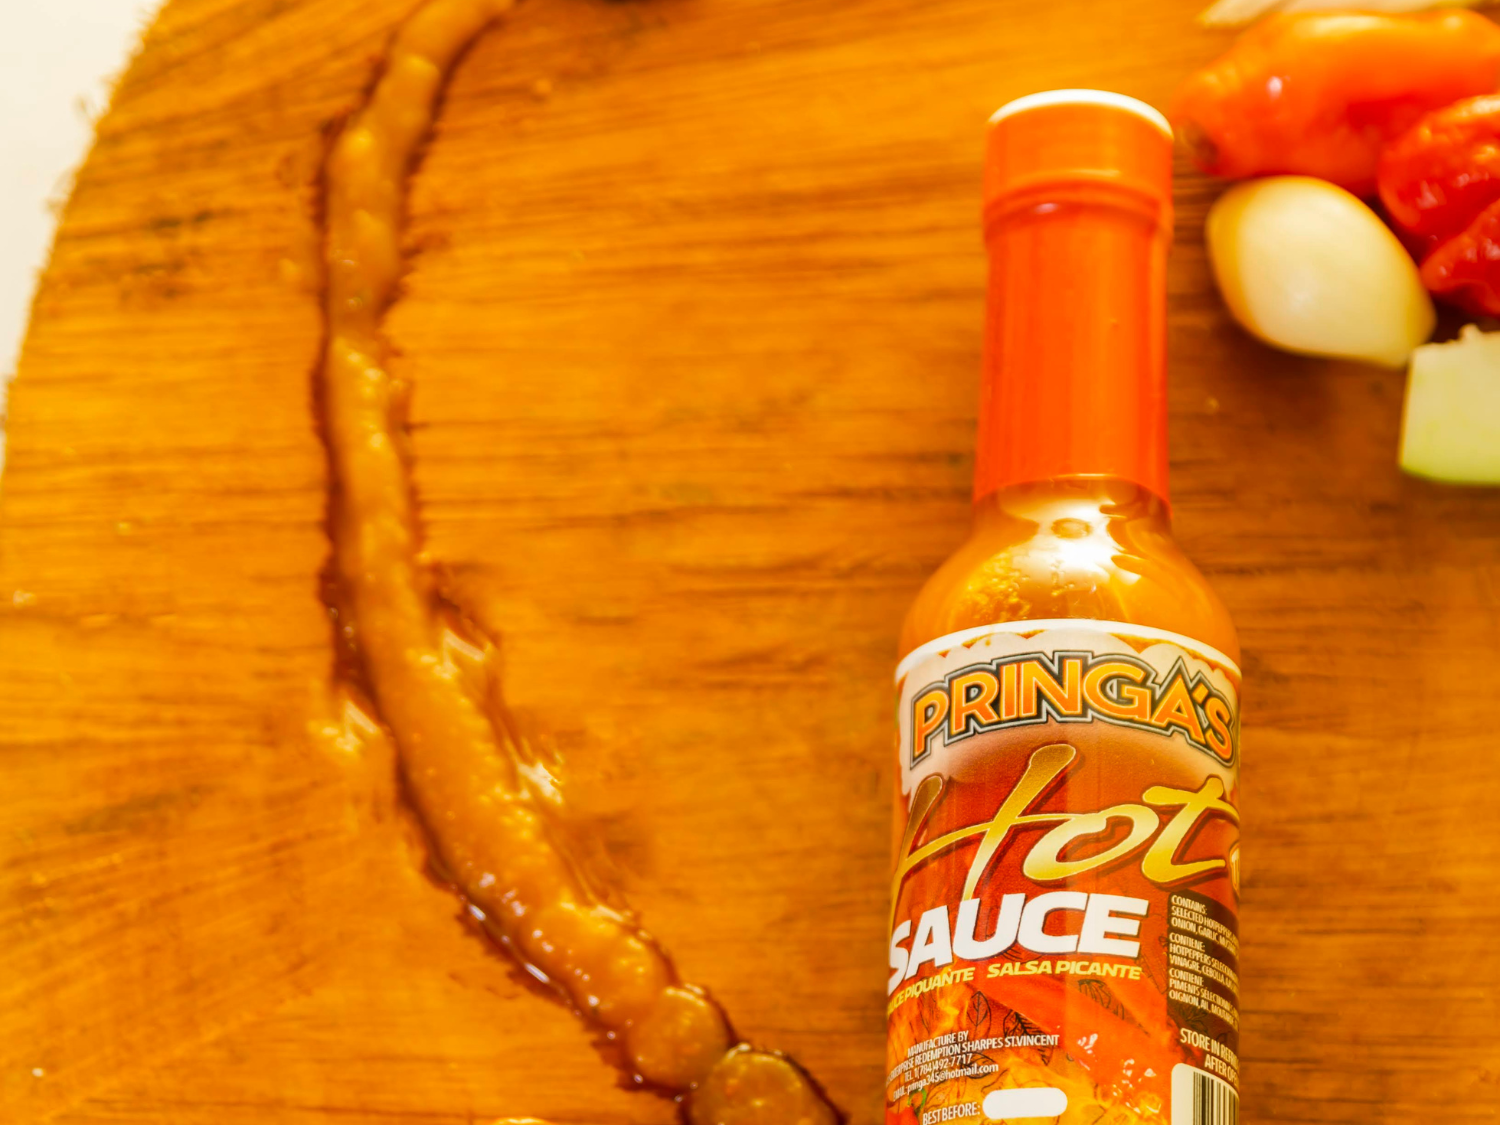 Pringas- Hot-sauce